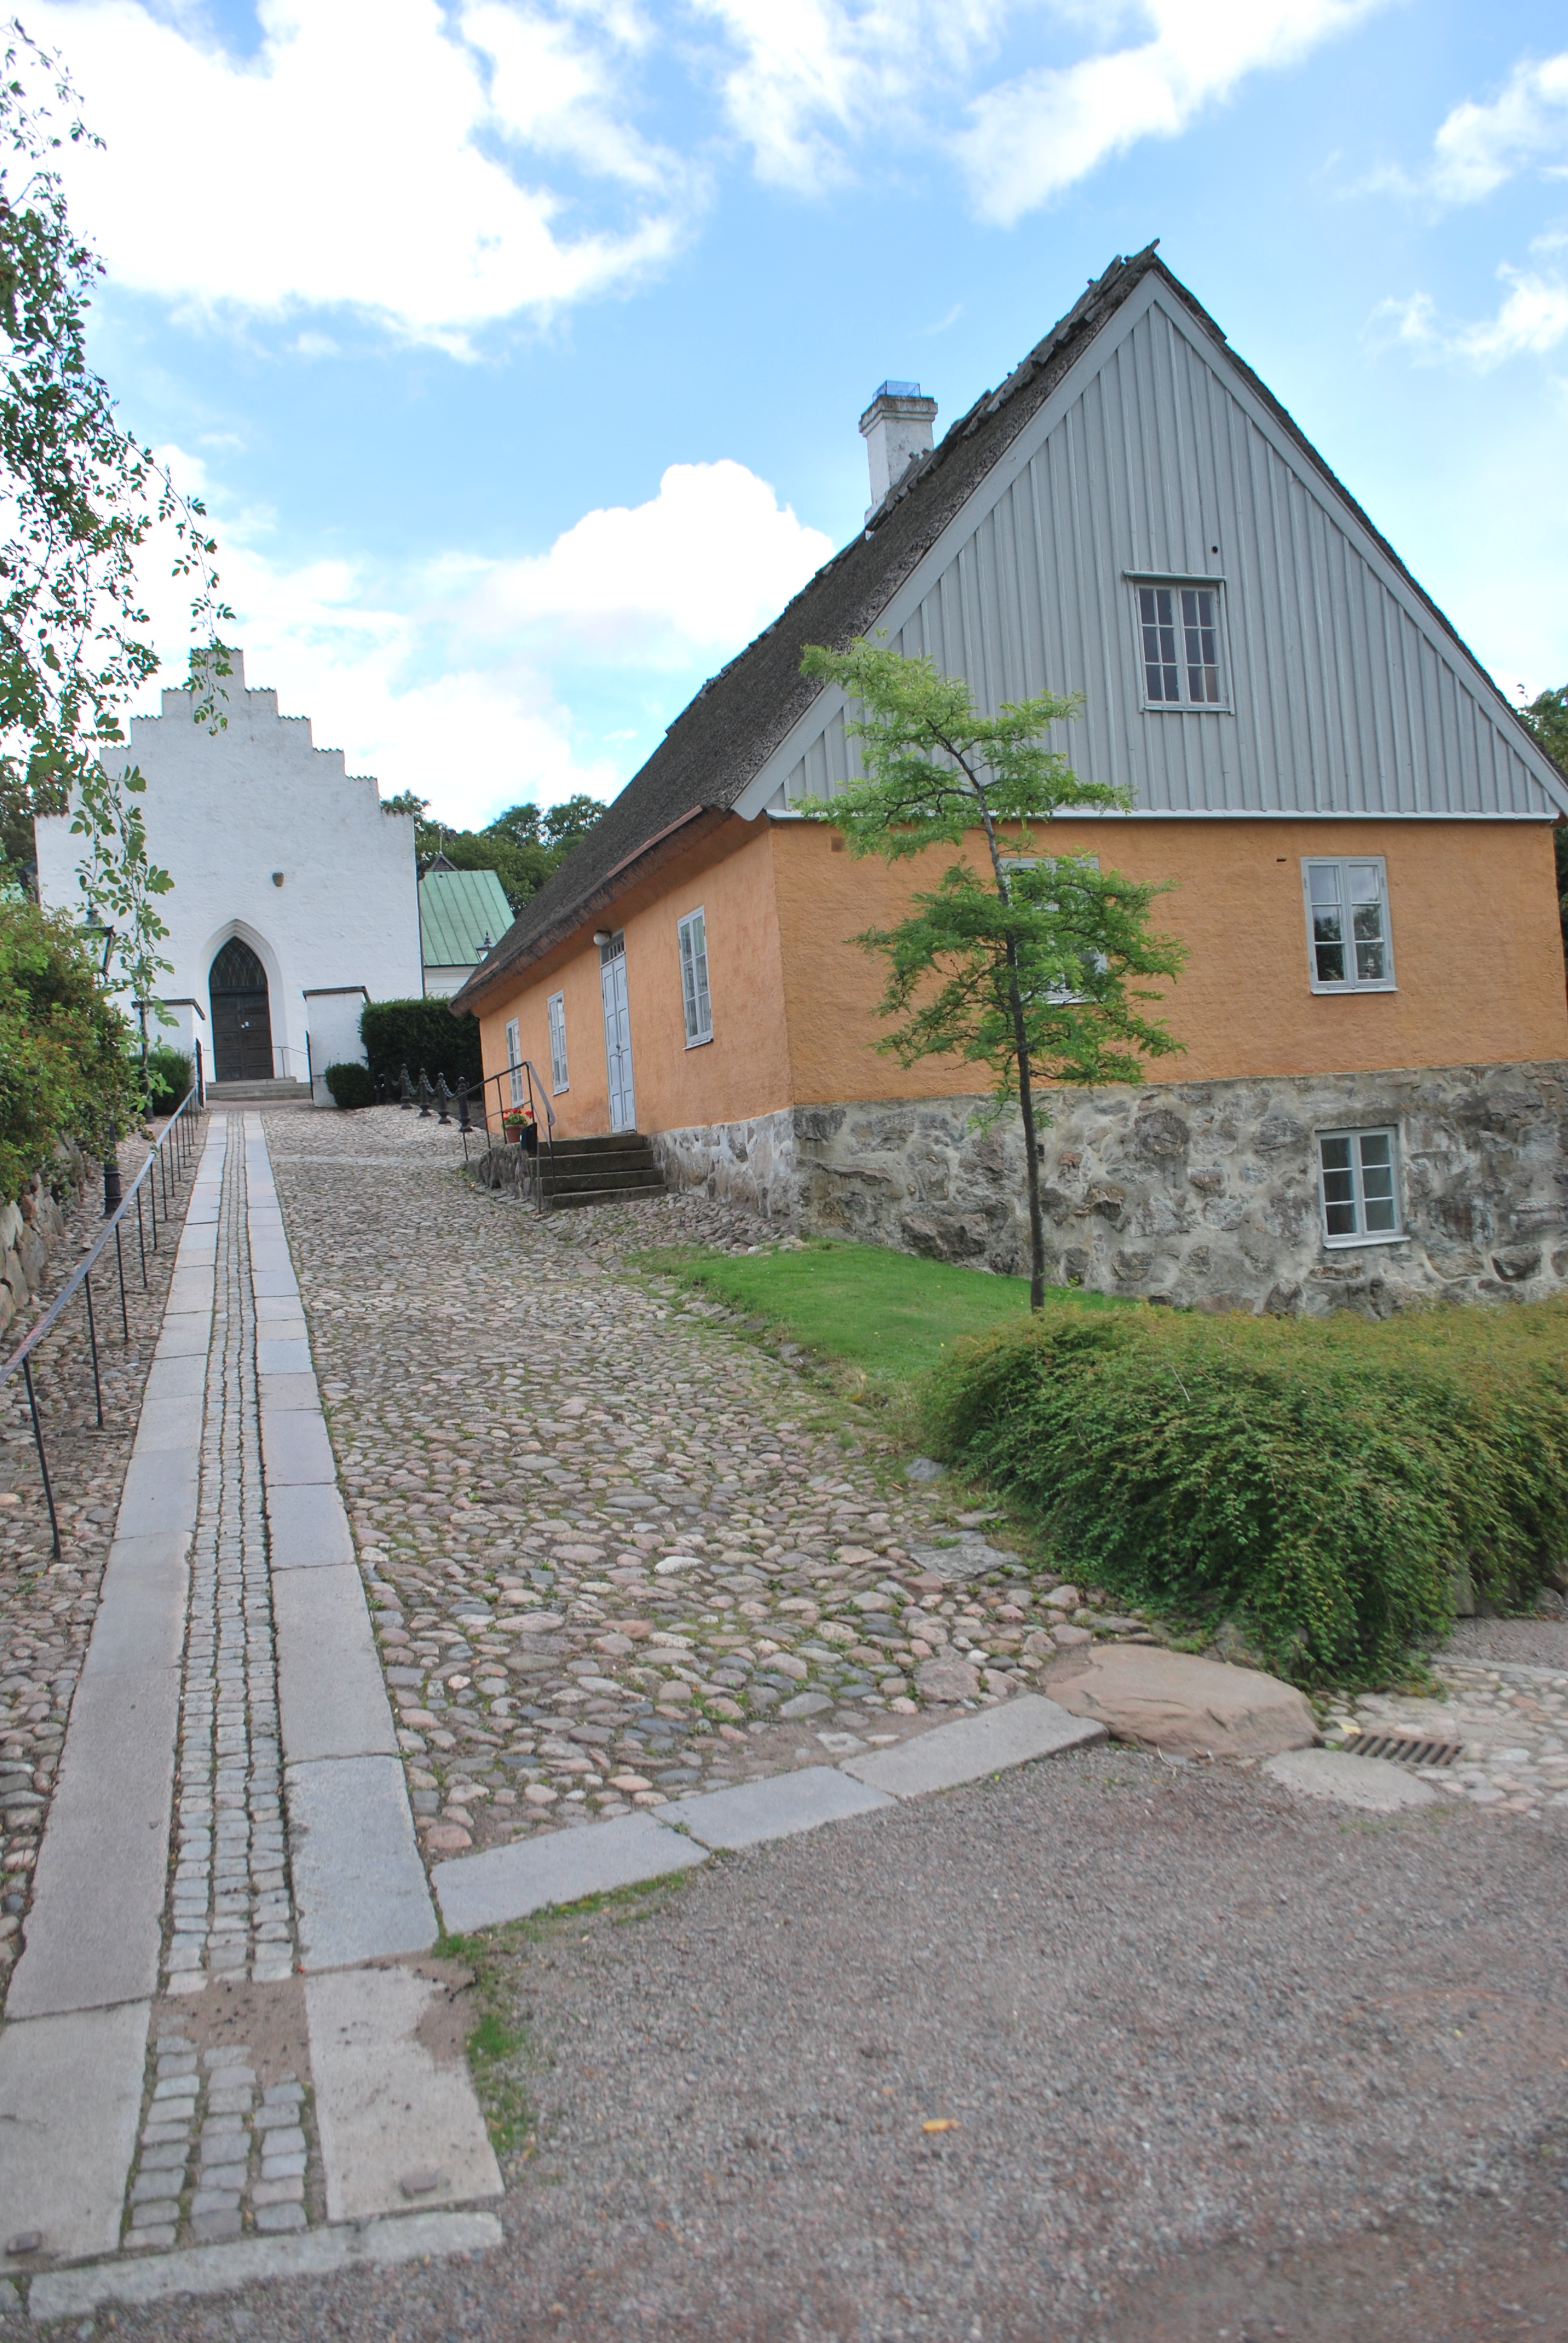 Raus kyrka, kyrkans västfasad och f.d. skola